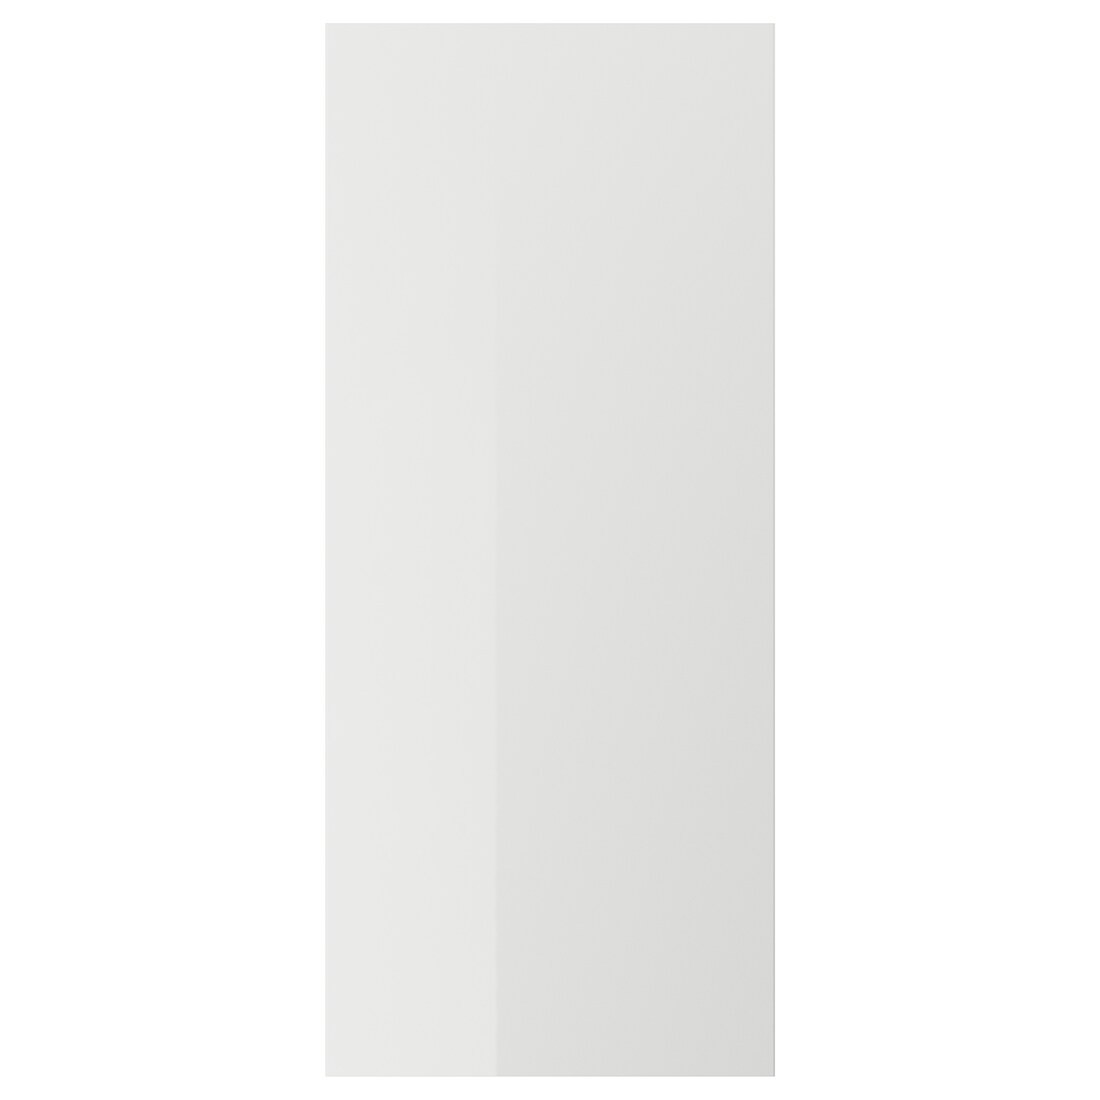 RINGHULT РІНГХУЛЬТ Двері, глянцевий світло-сірий, 60x140 см